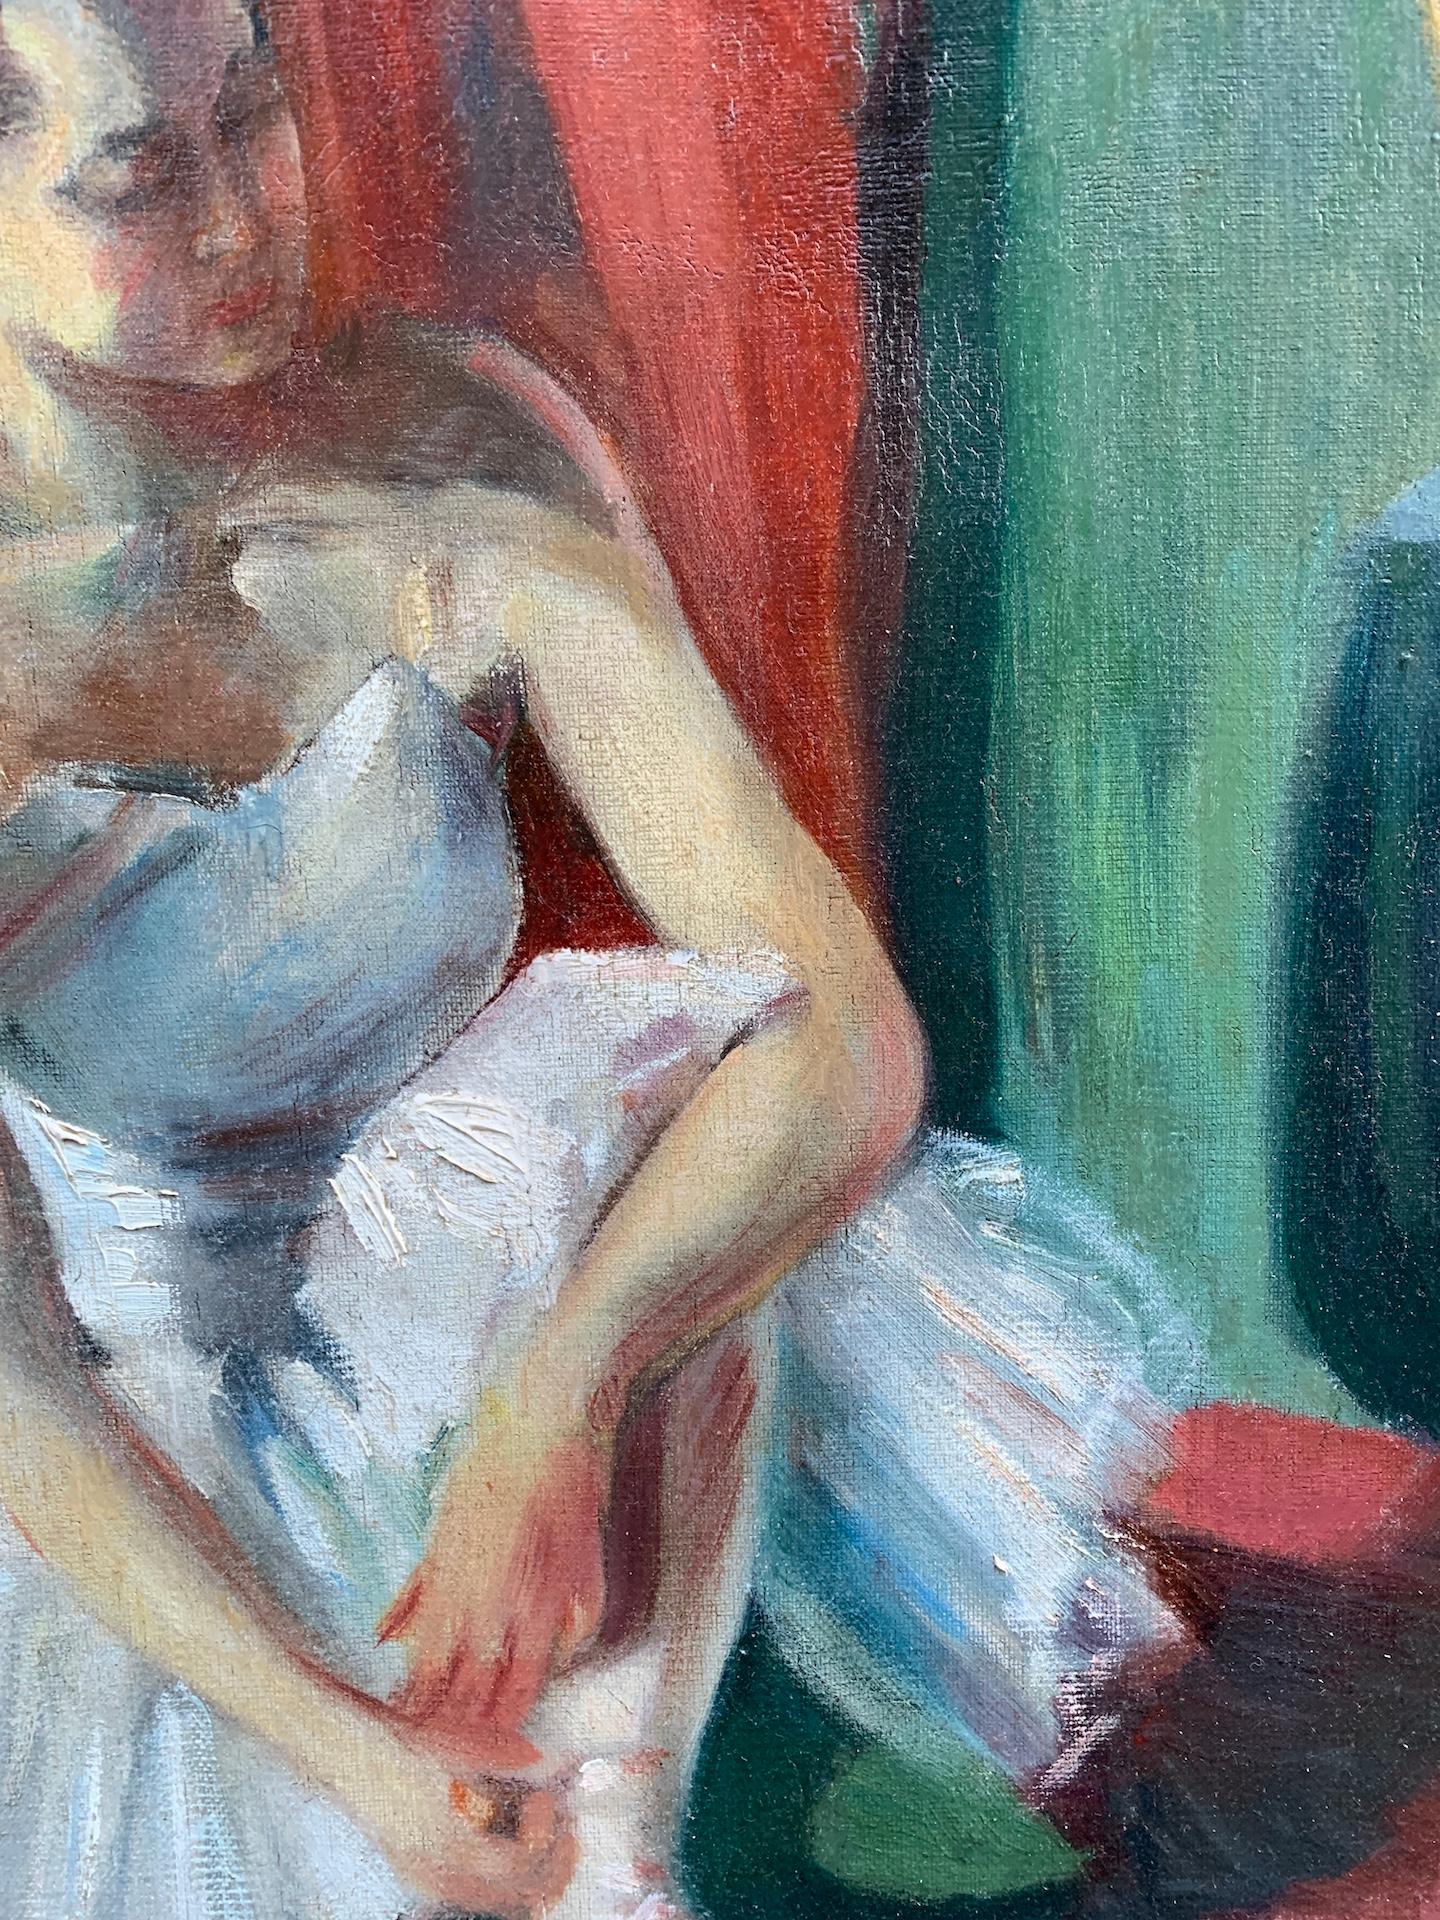 Französische, sitzende Ballerina aus Öl des frühen 20. Jahrhunderts, die ihre Ballett slippers anpasst. (Braun), Figurative Painting, von Impressionist French School